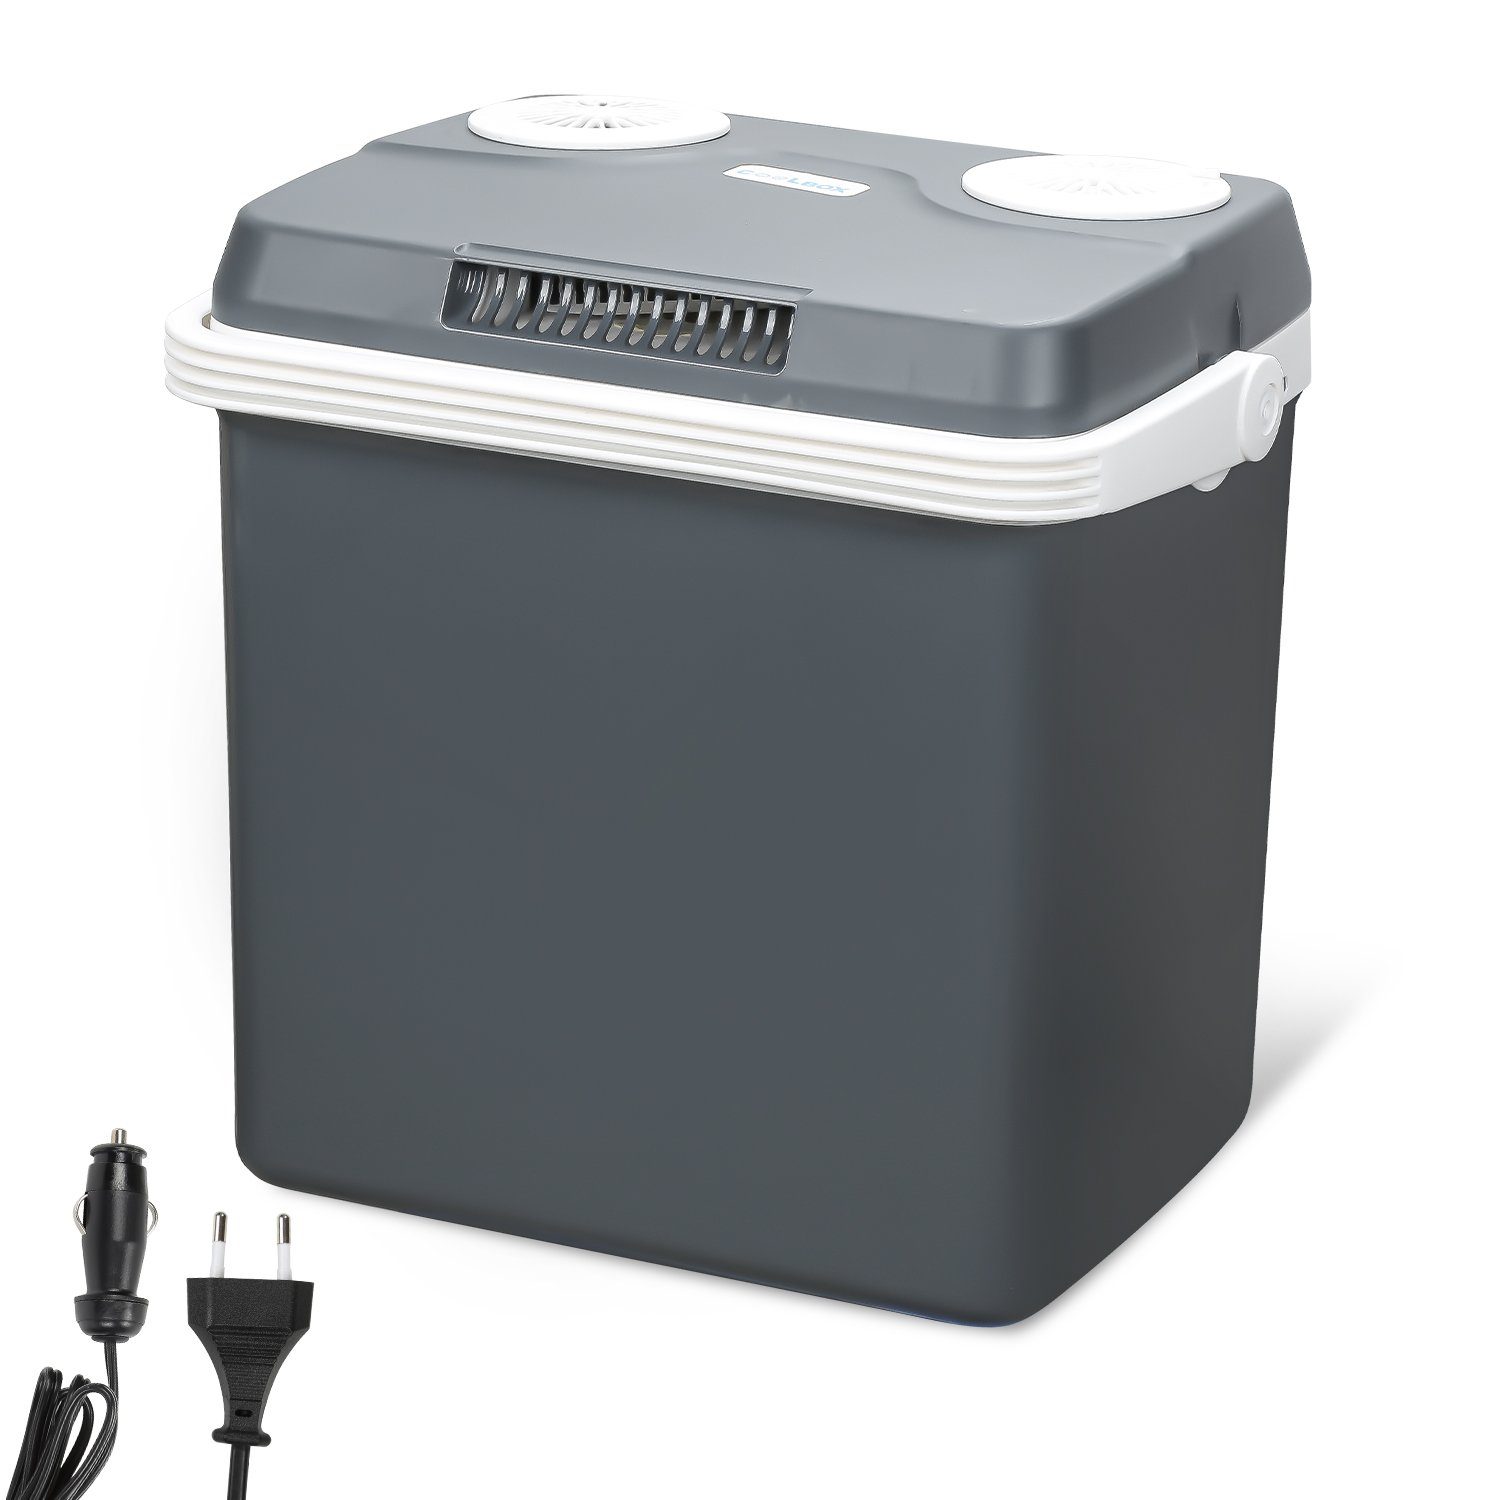 Clanmacy Outdoor-Flaschenkühler Kühlbox 32 Liter 12V 230V WÄRMT & KÜHLT  Mini-Kühlschrank, A++ mit ECO-Modus Elektrische Kühlbox für Auto, Boot